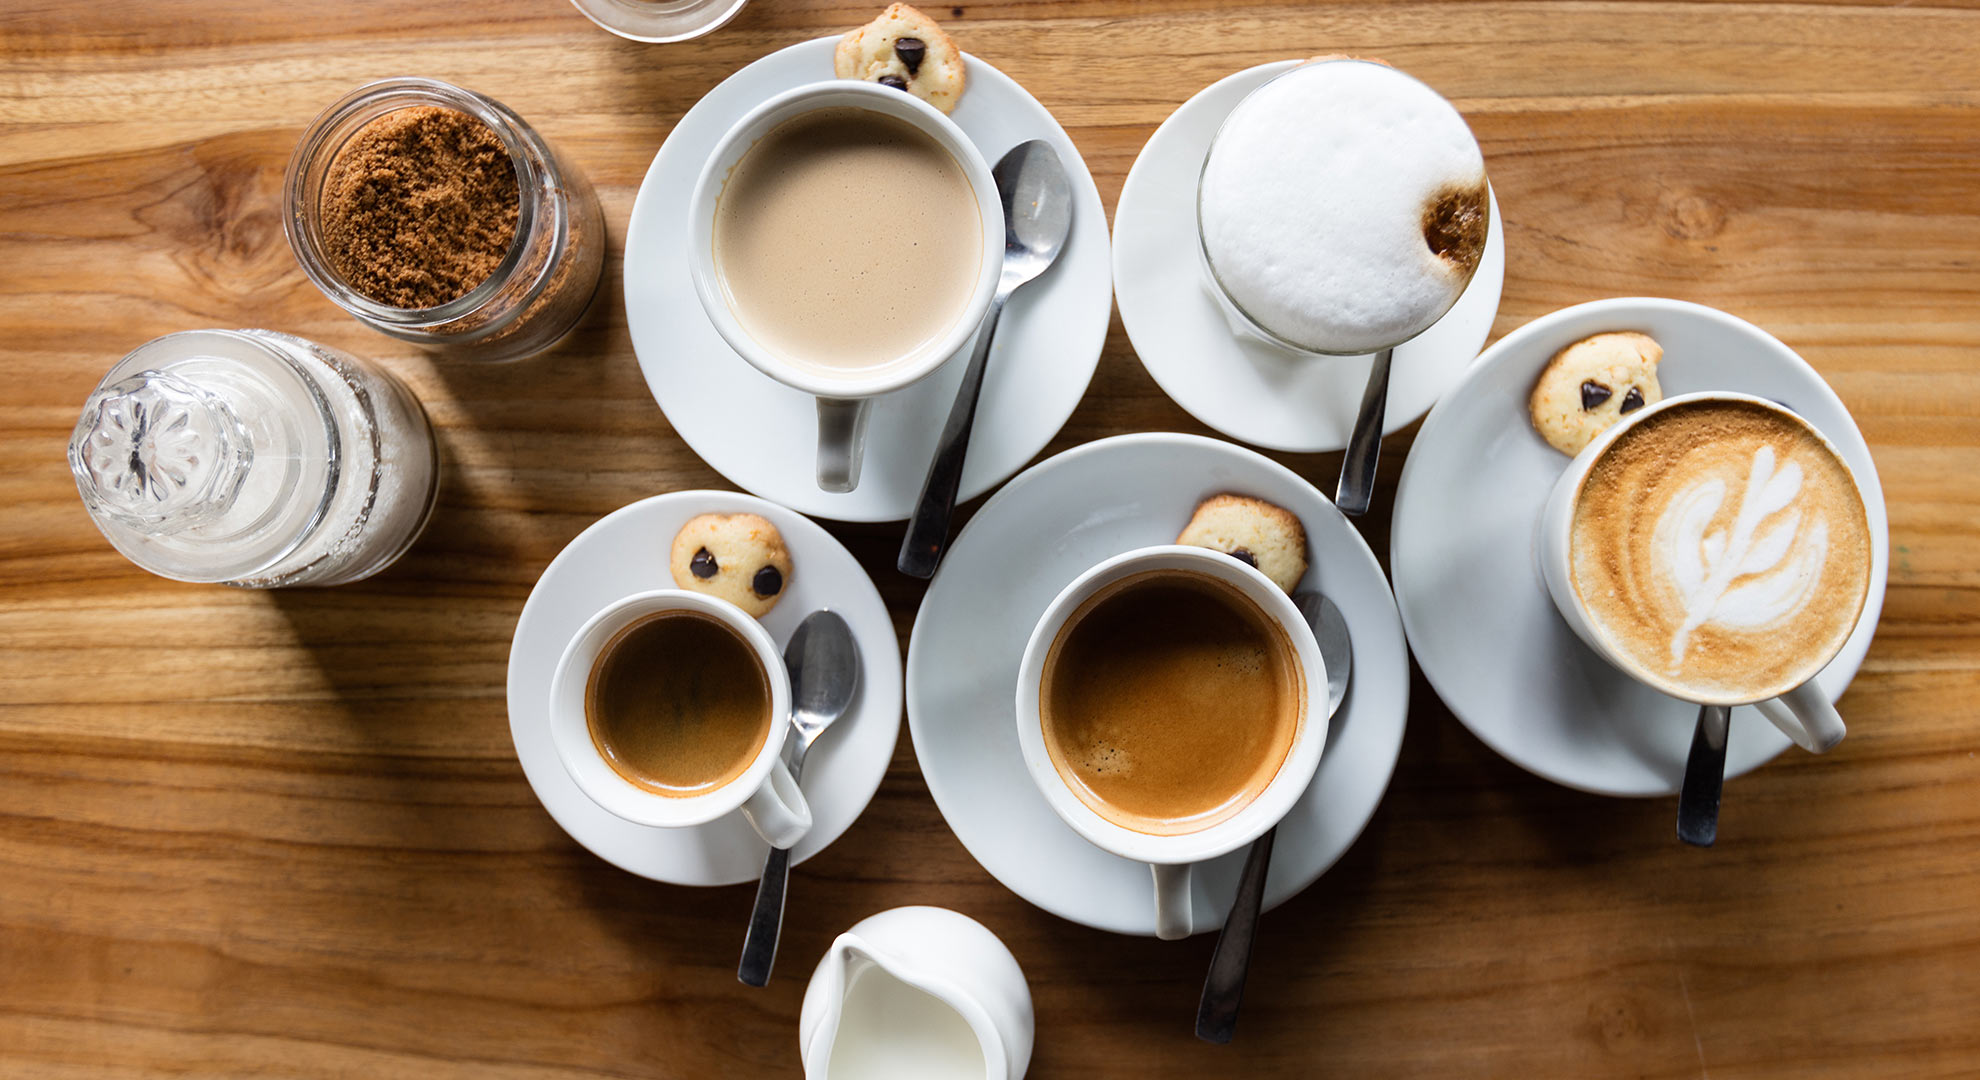 La genética desempeña un papel en la preferencia del café o el té